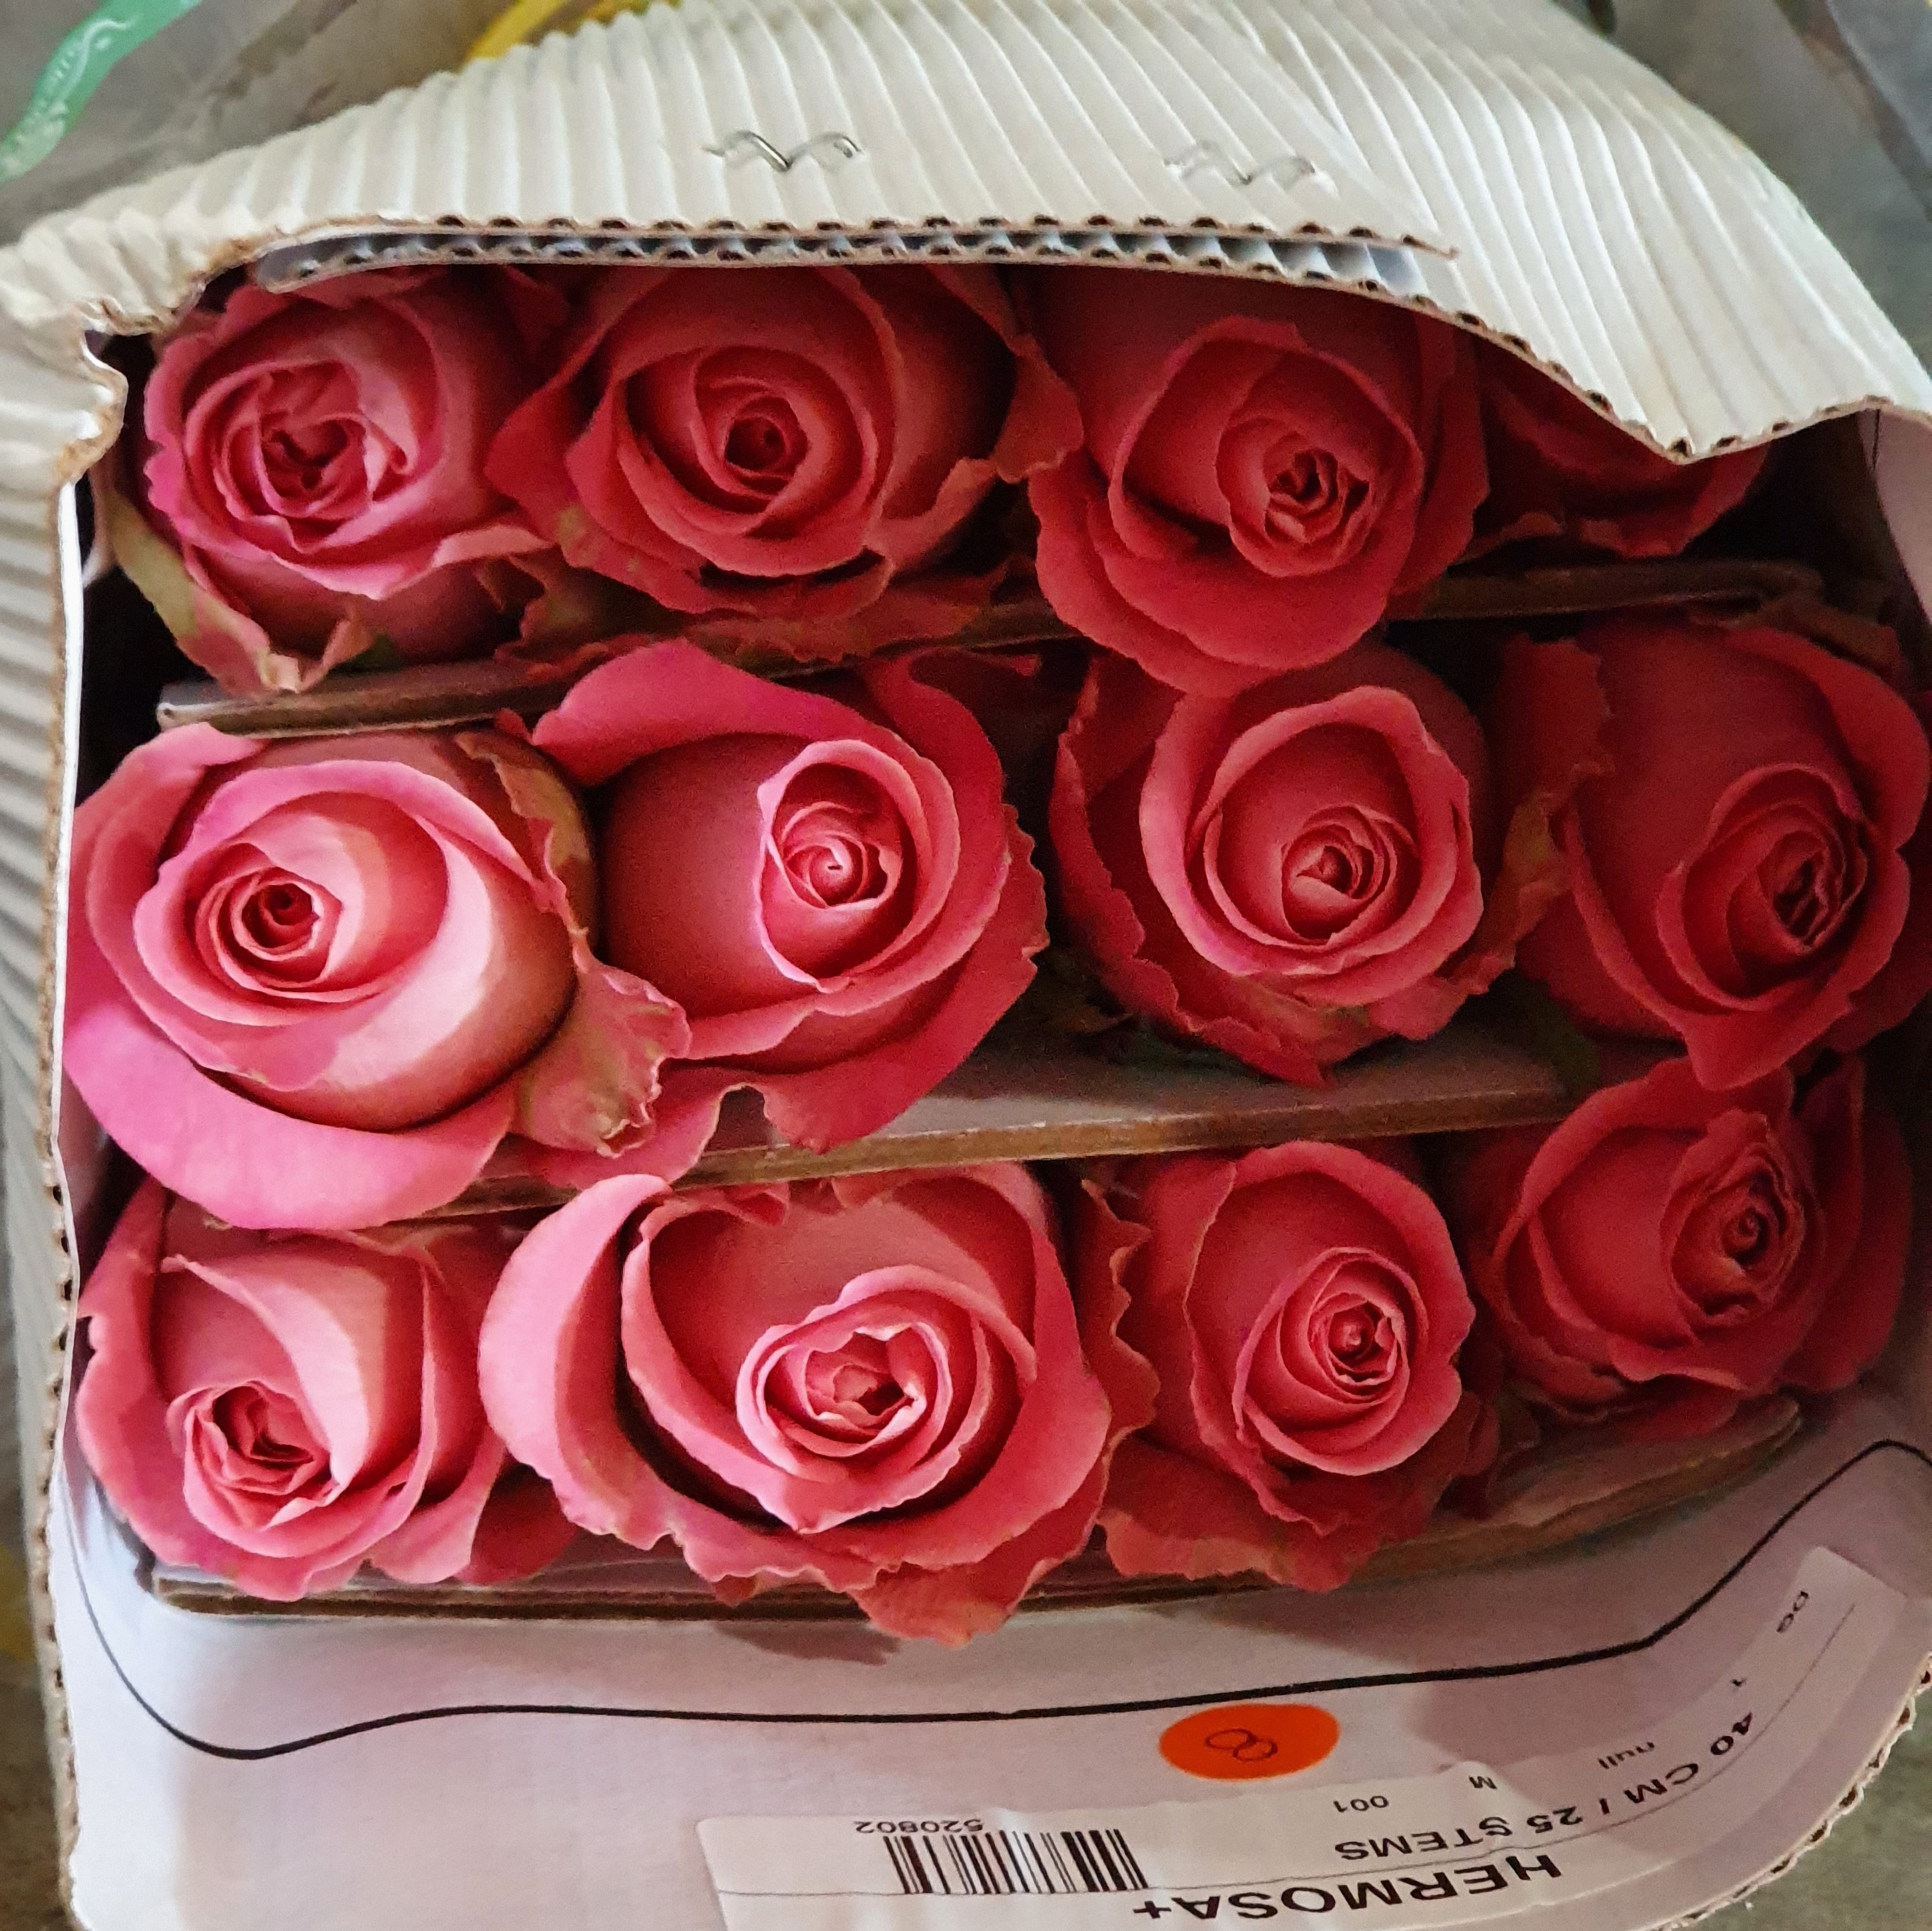 Pqt 25 varas 60 cms. Rosas Rosadas | Regalar Flores, Envio de flores, desayunos y regalos a domicilio